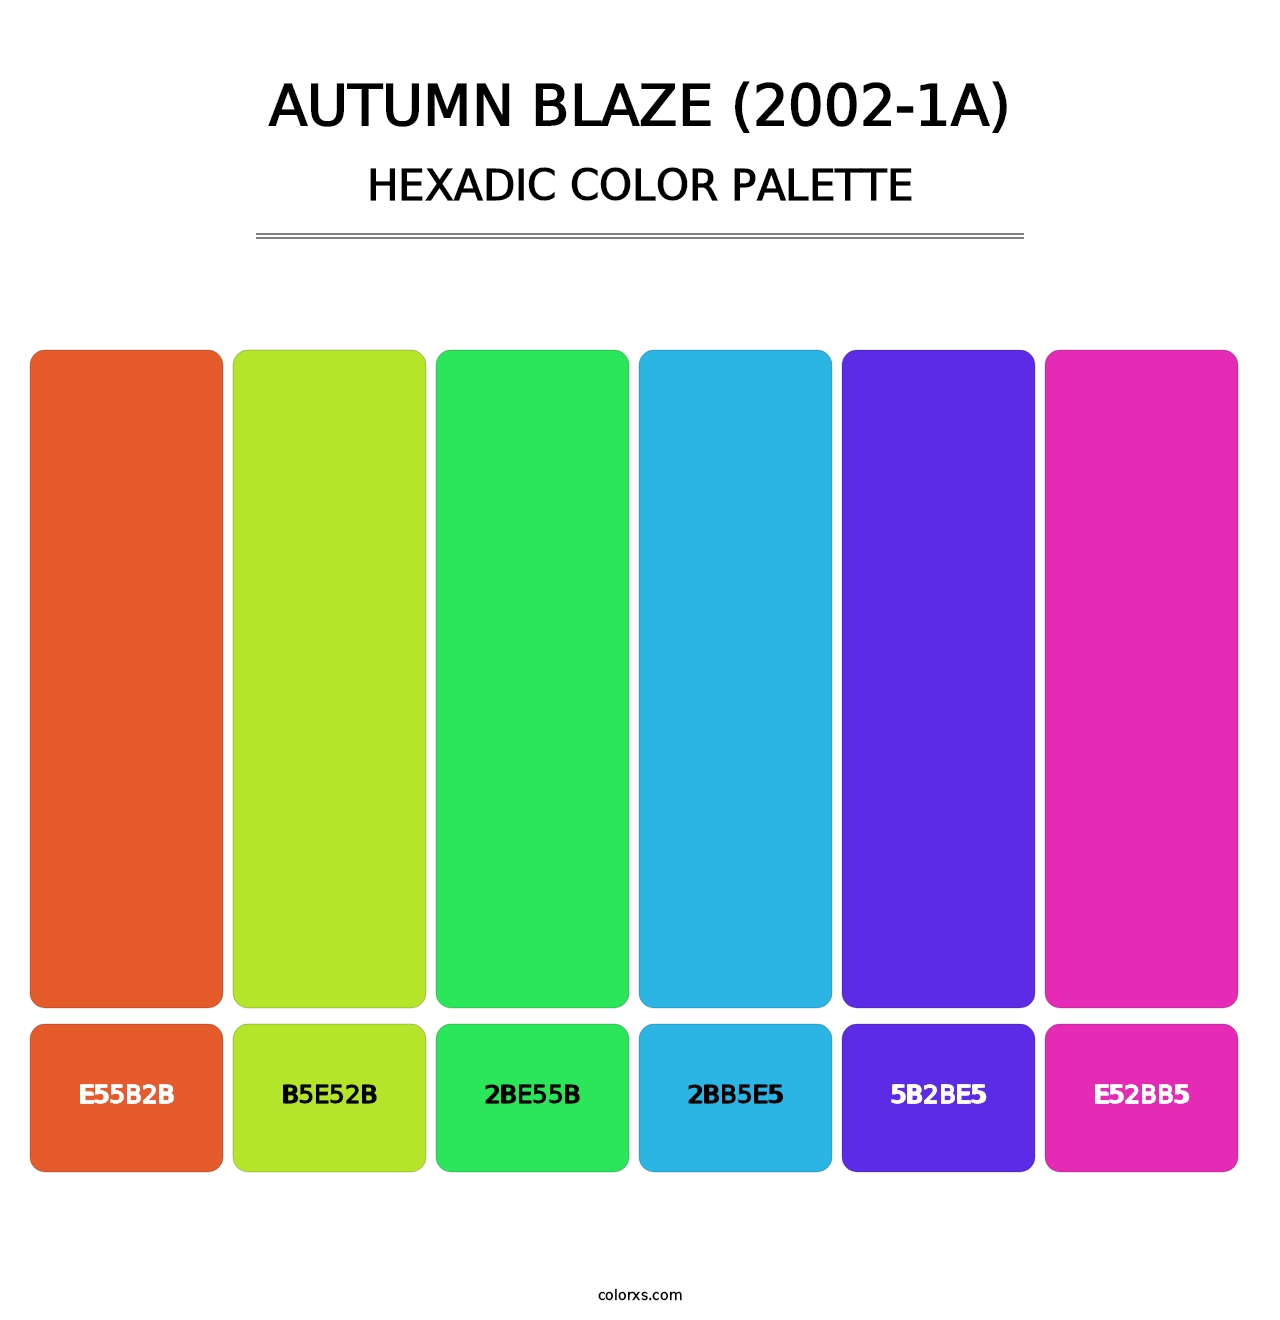 Autumn Blaze (2002-1A) - Hexadic Color Palette